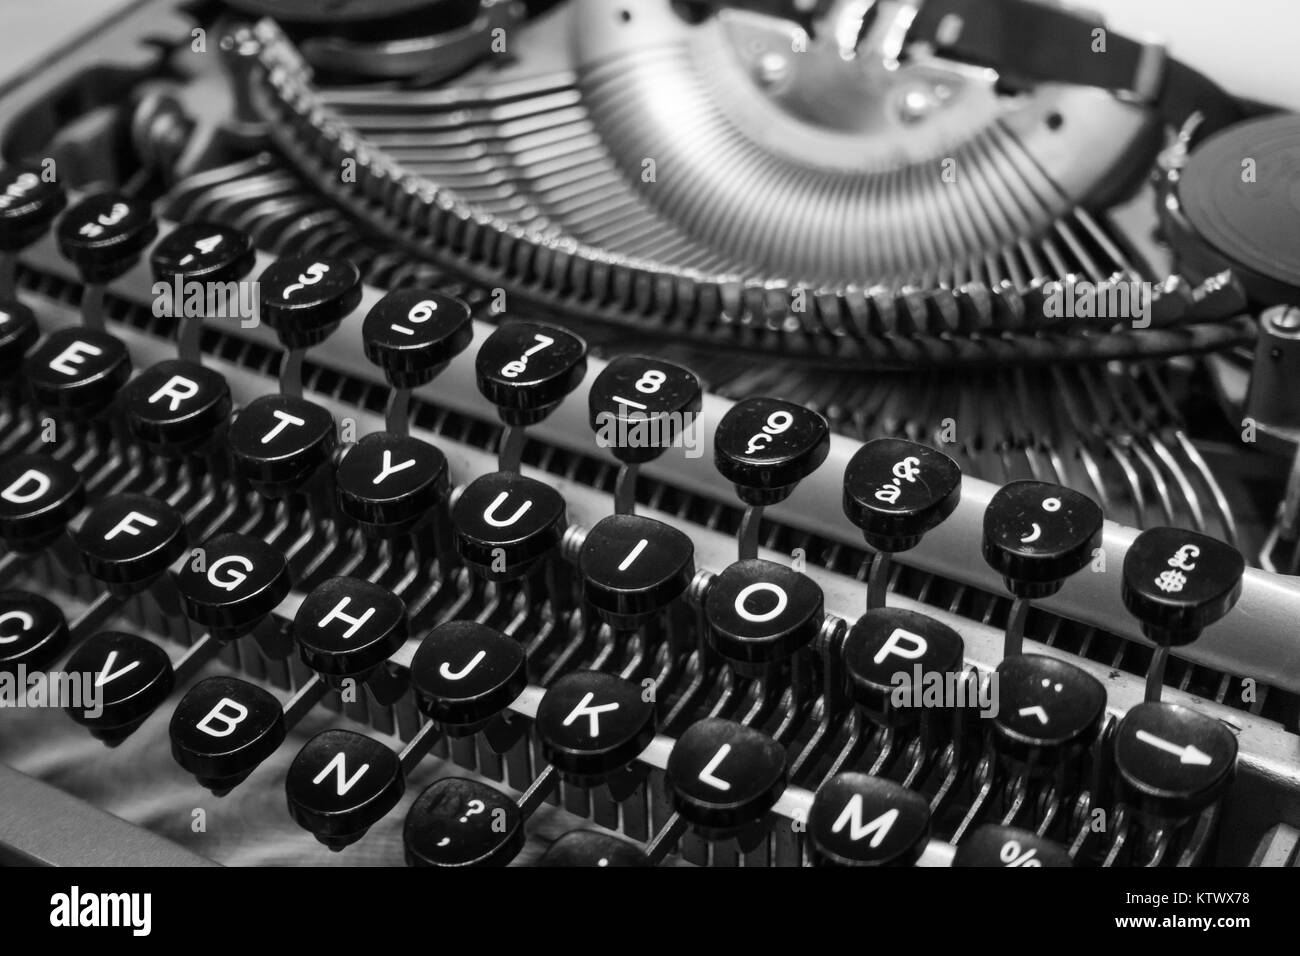 Typewriter keyboard macro black and white Stock Photo